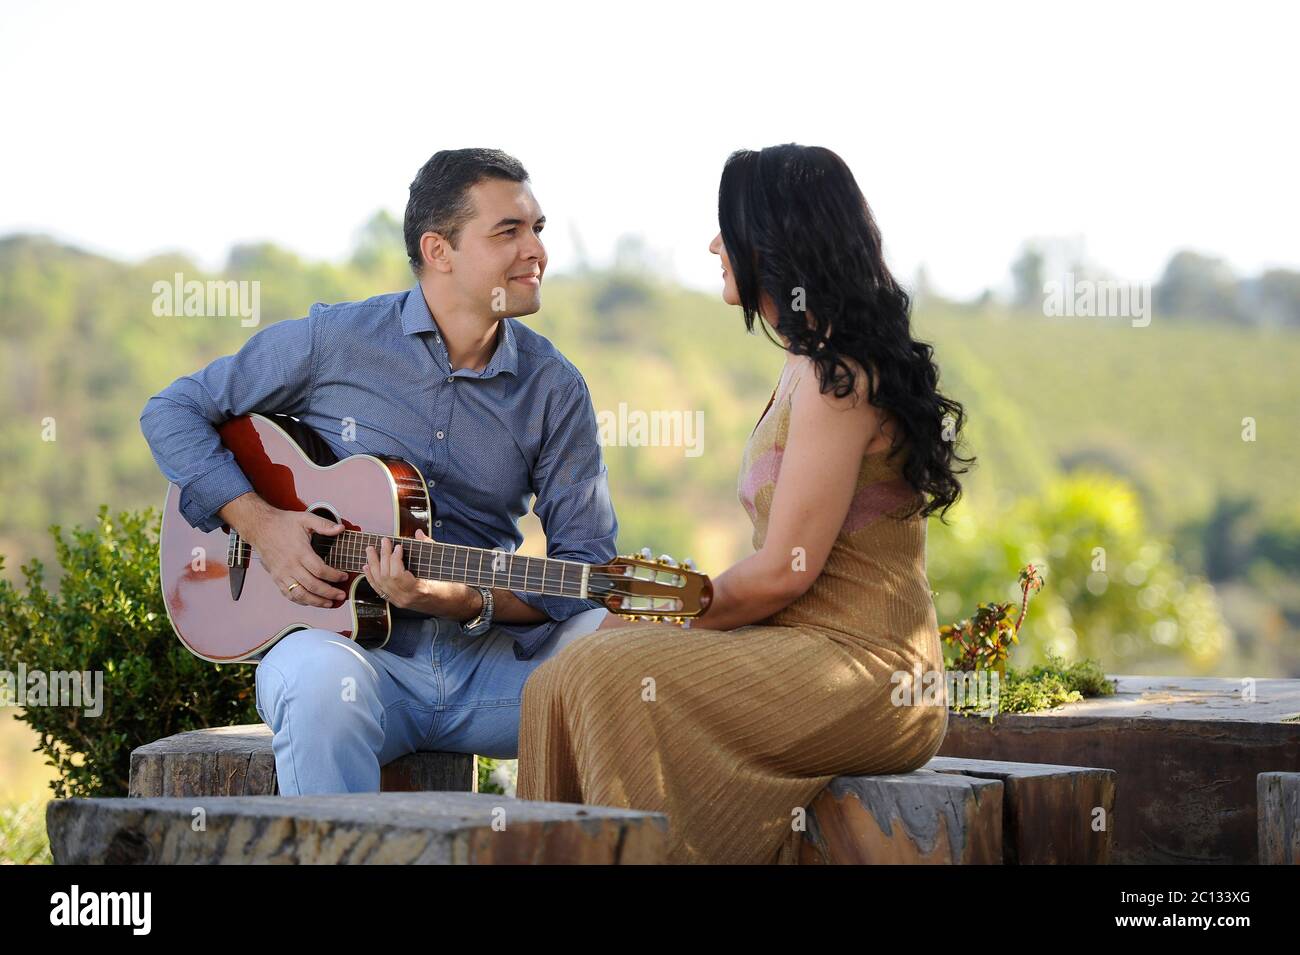 Portrait von schönen jungen Brautpaar posiert im Freien Fotoshooting Gitarre spielen Stockfoto